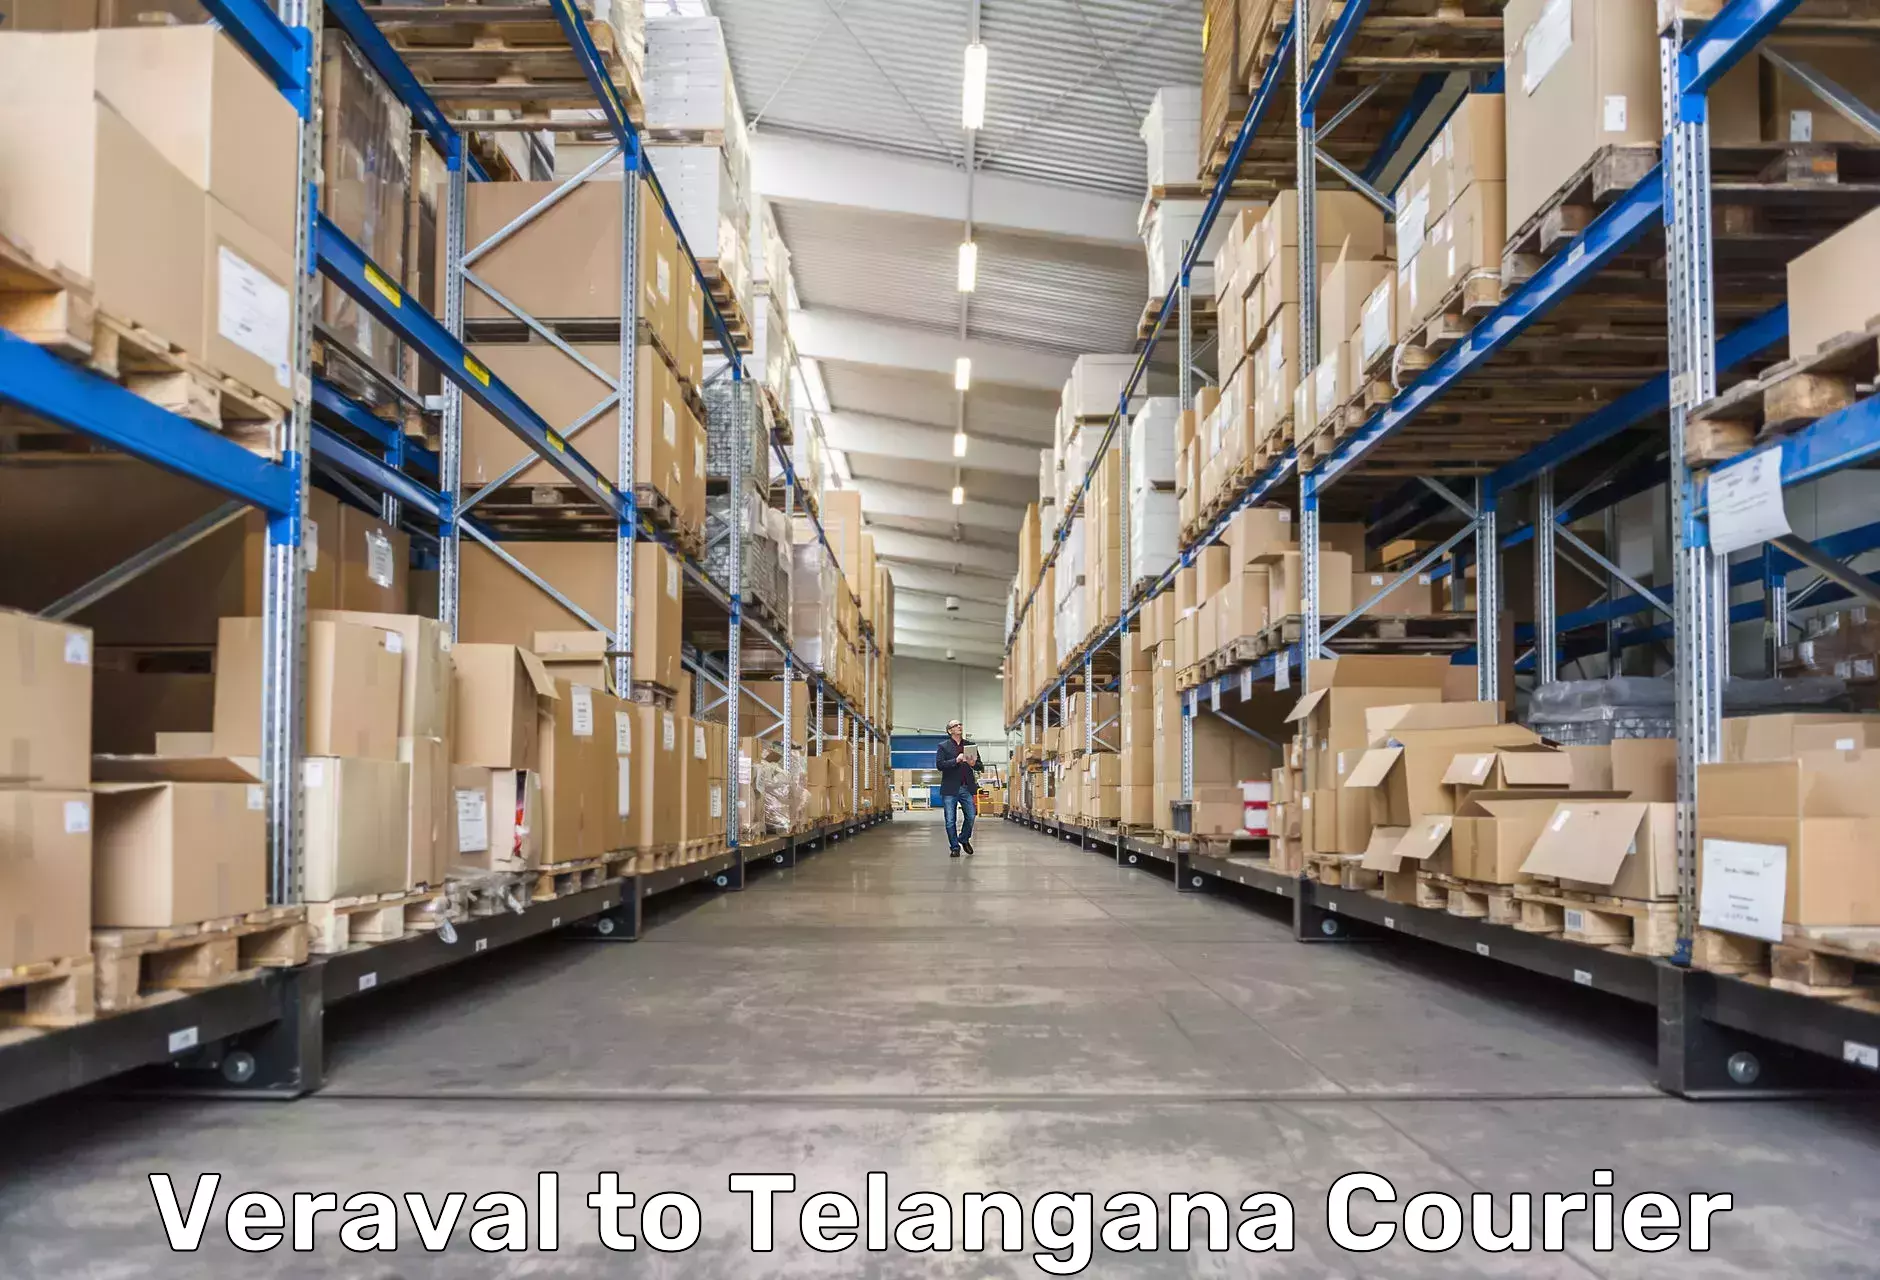 Scheduled delivery in Veraval to Balanagar